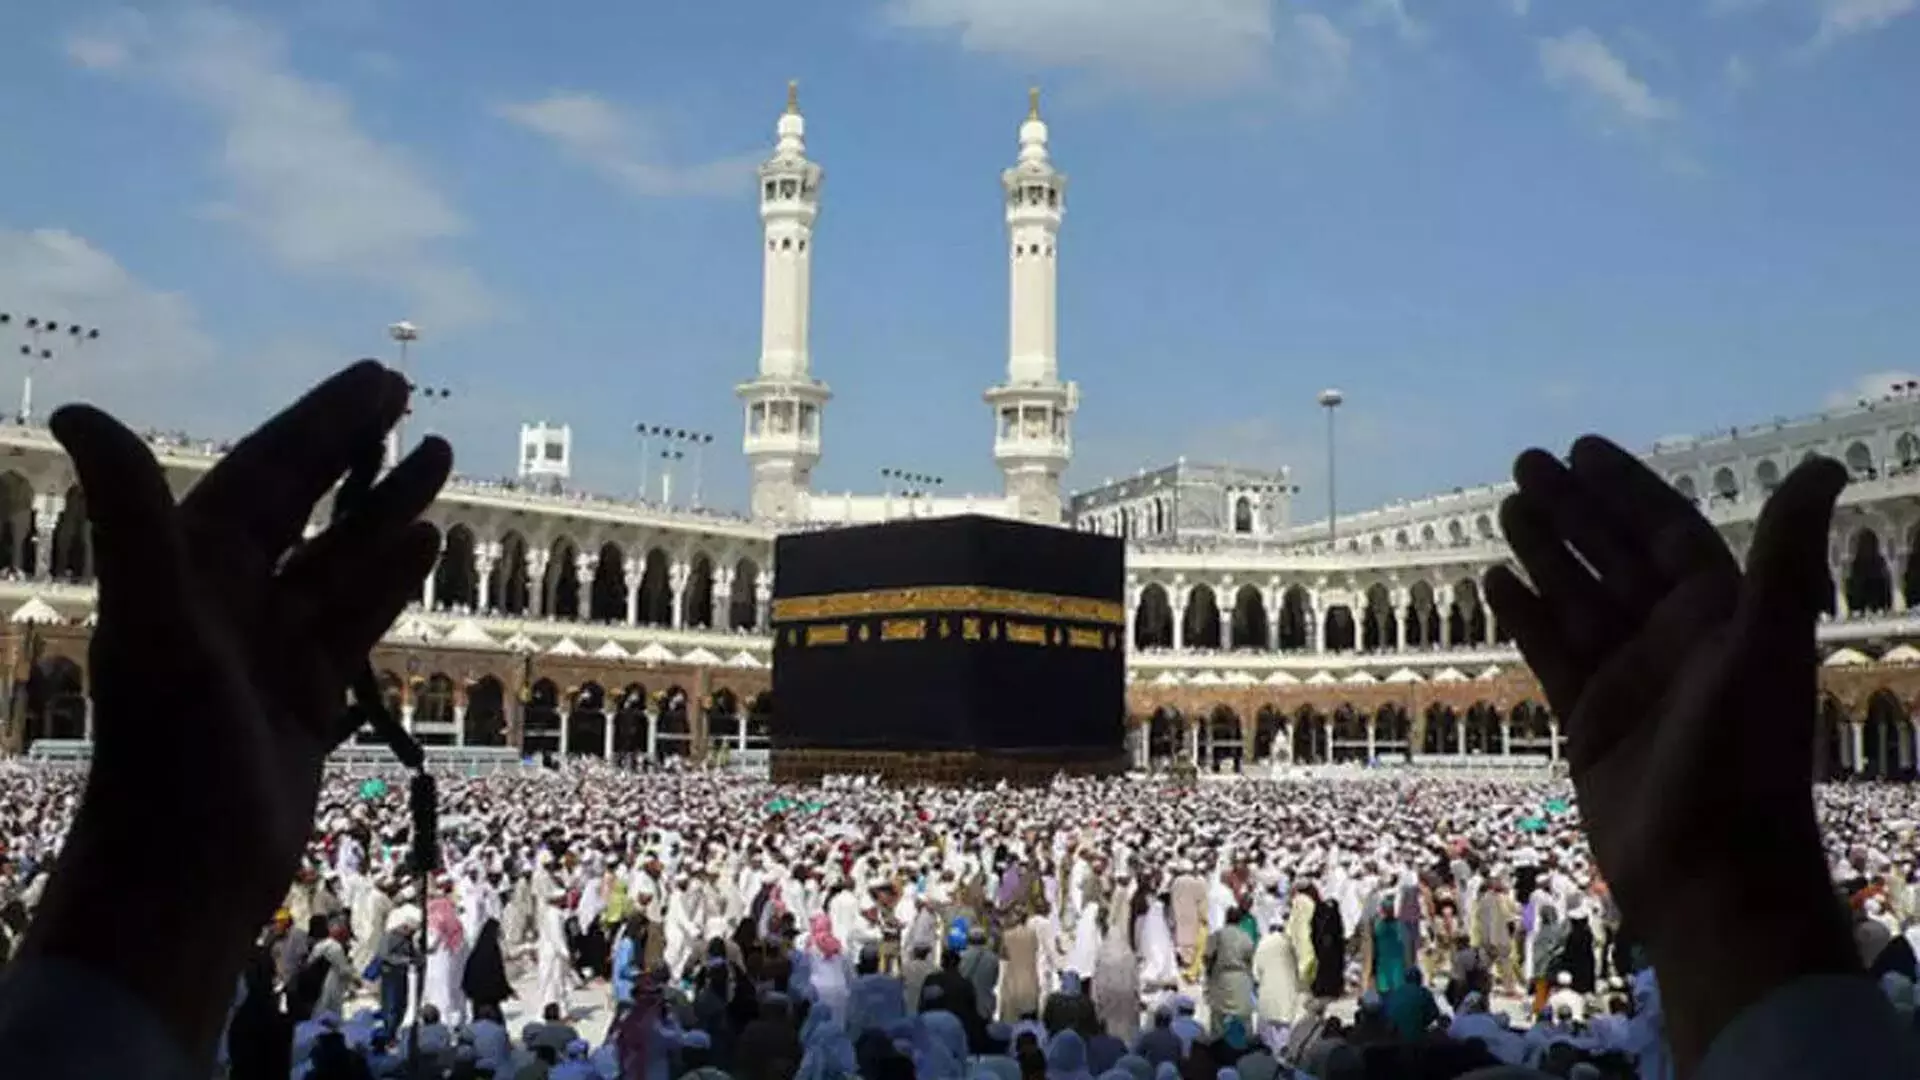 Hajj: सऊदी अरब के काबा में मुसलमानों की तीर्थयात्रा की तिथि